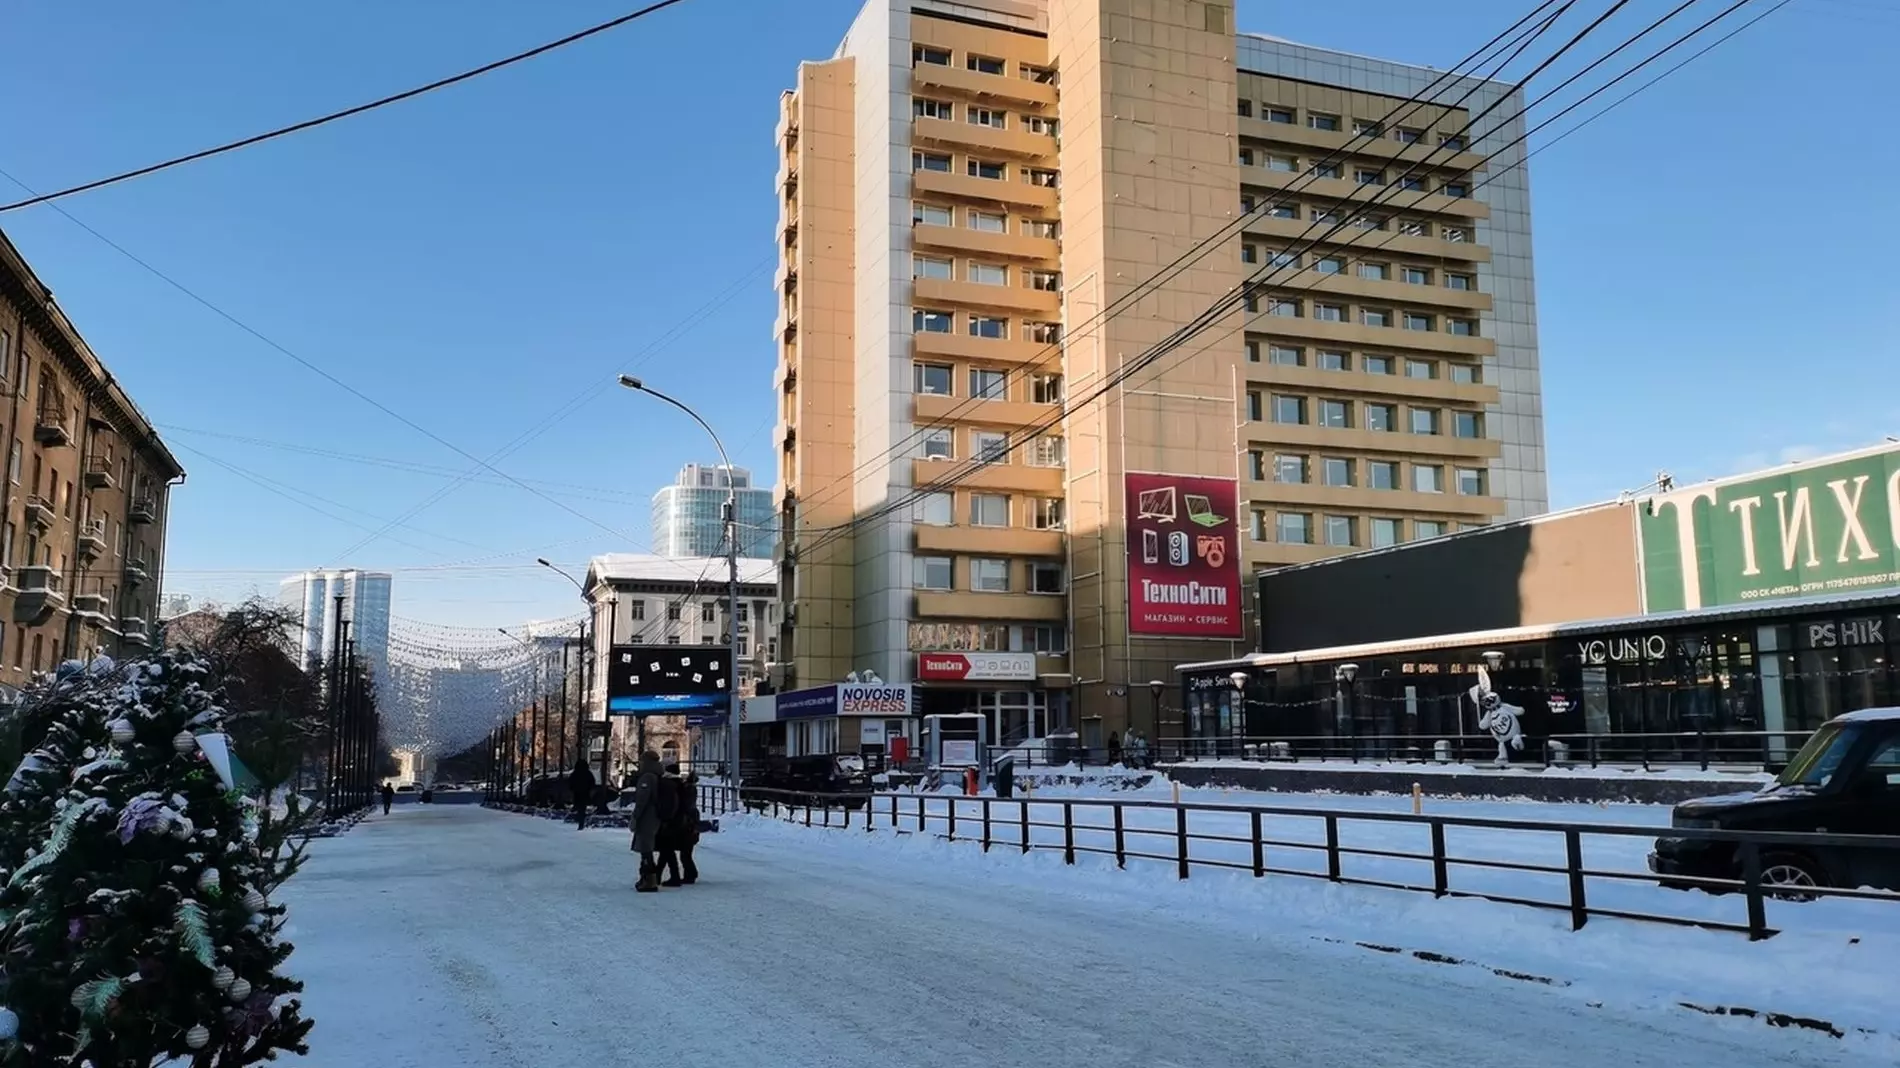 31 декабря в Новосибирске будет теплым и снежным